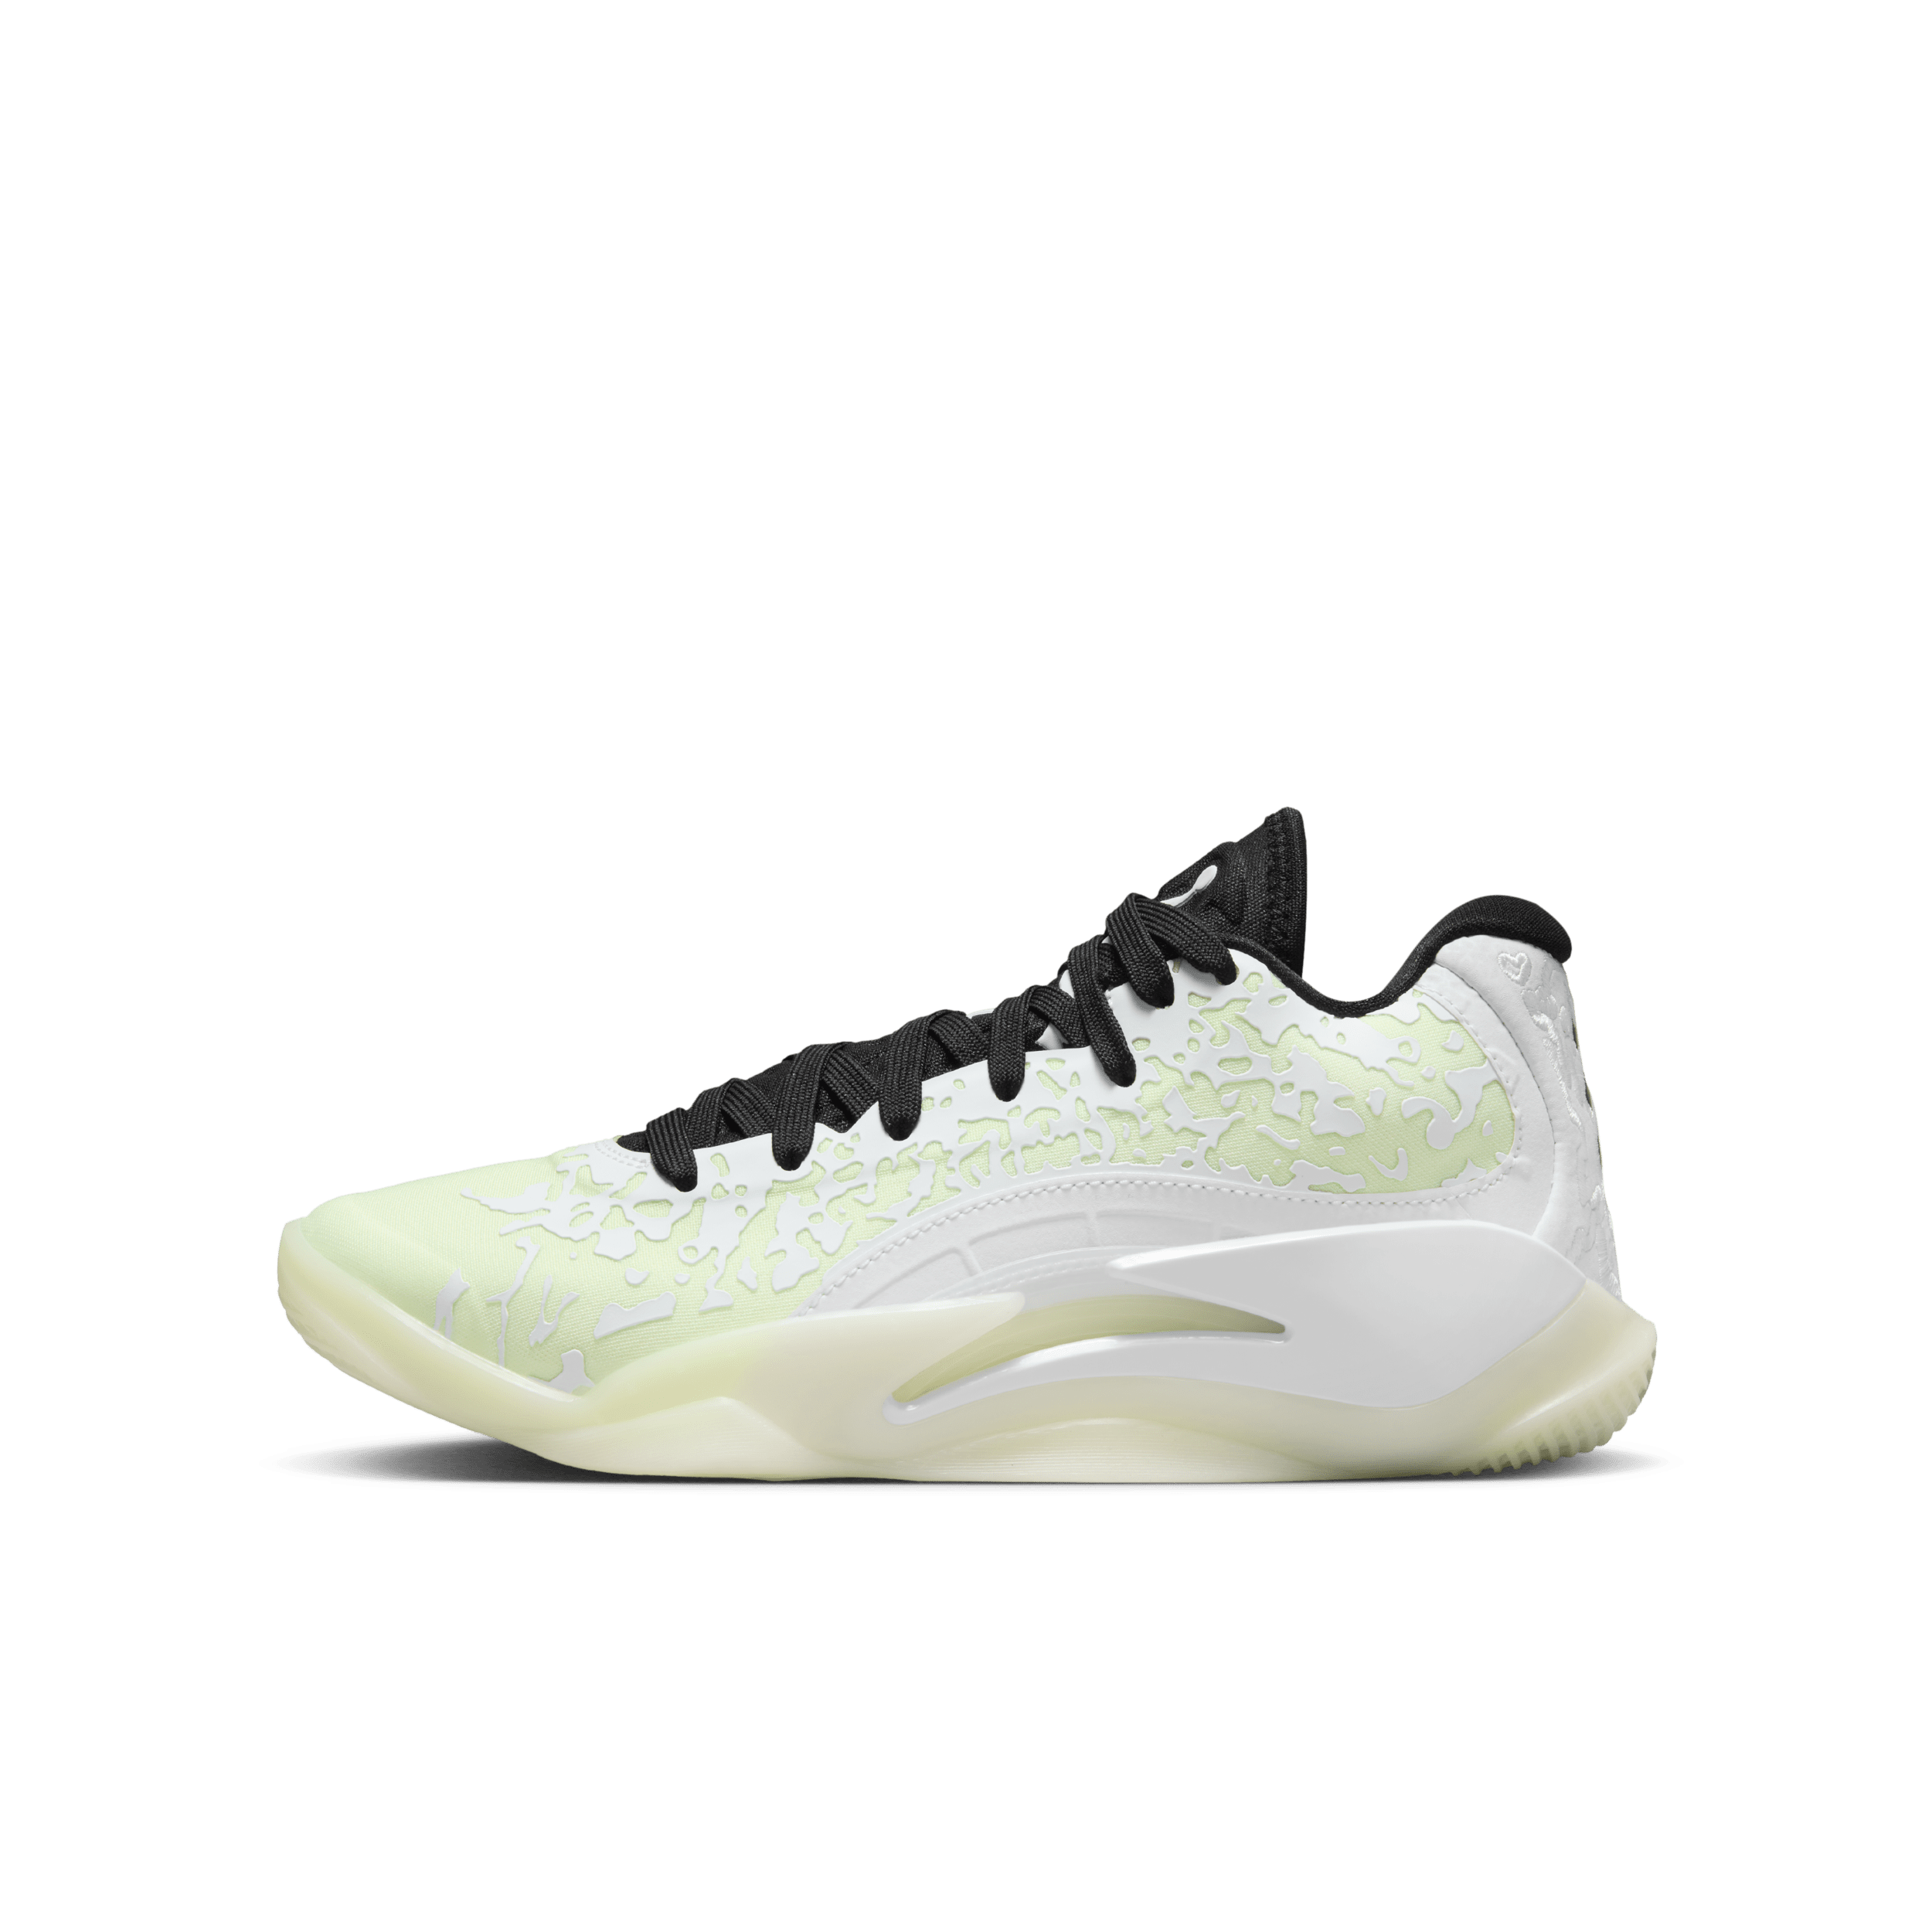 Nike Zion 3 basketbalschoenen voor kids - Wit